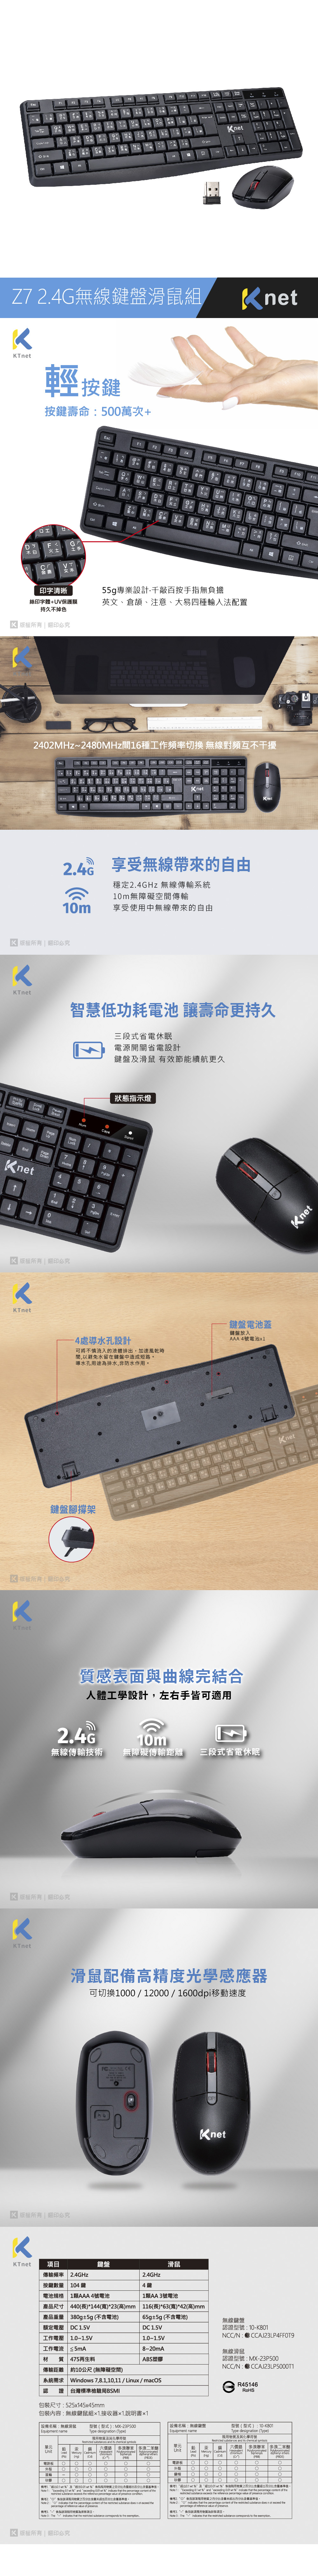 無線 滑鼠 無線 鍵盤 無線 鍵盤滑鼠組